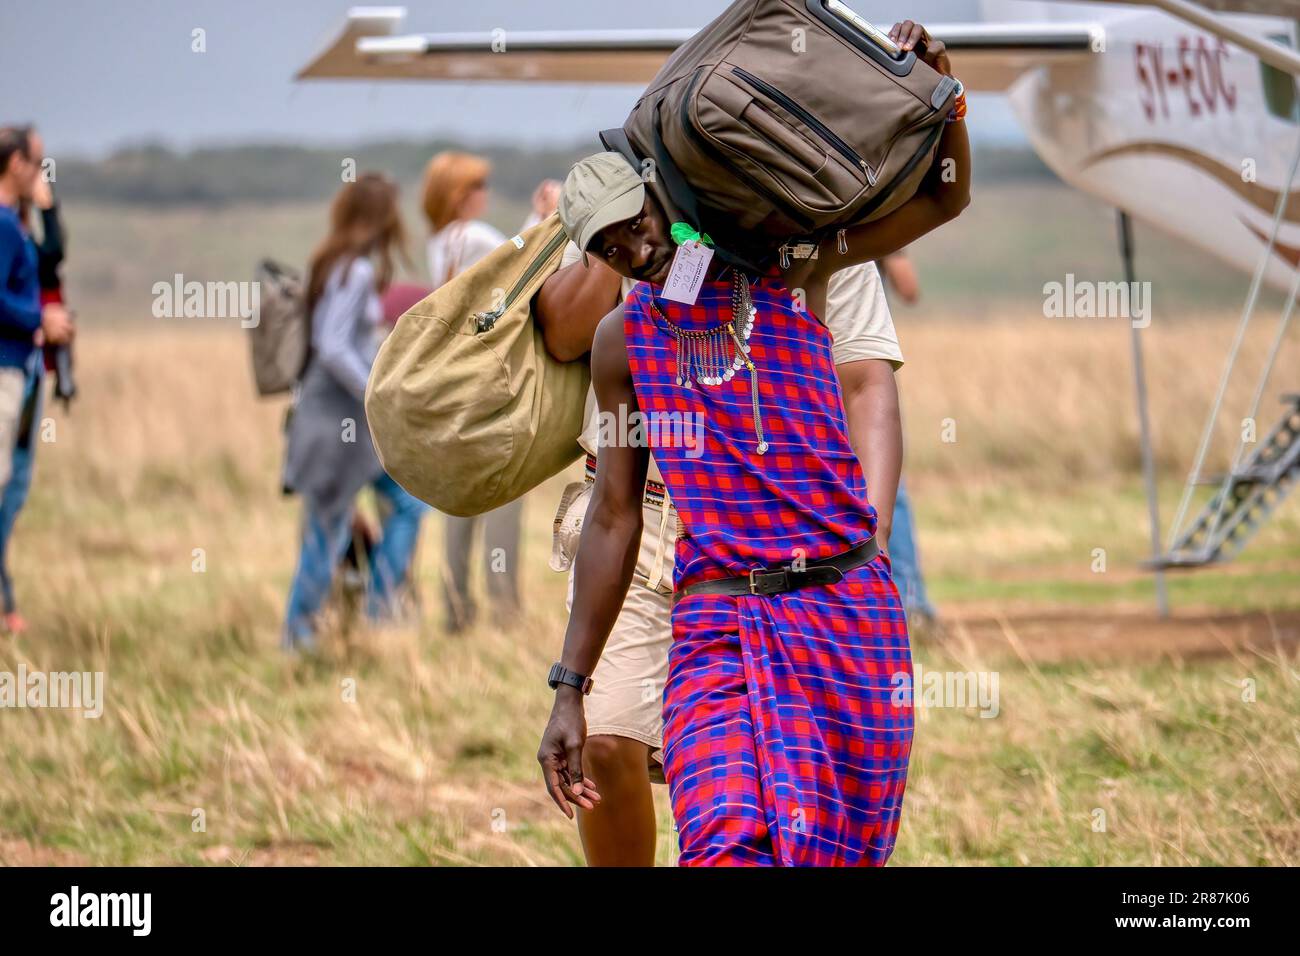 Maasai Mara, Kenya - September 25, 2013. A Maasai tribe member employed by a safari camp, carries passenger baggage from a charter flight. Stock Photo